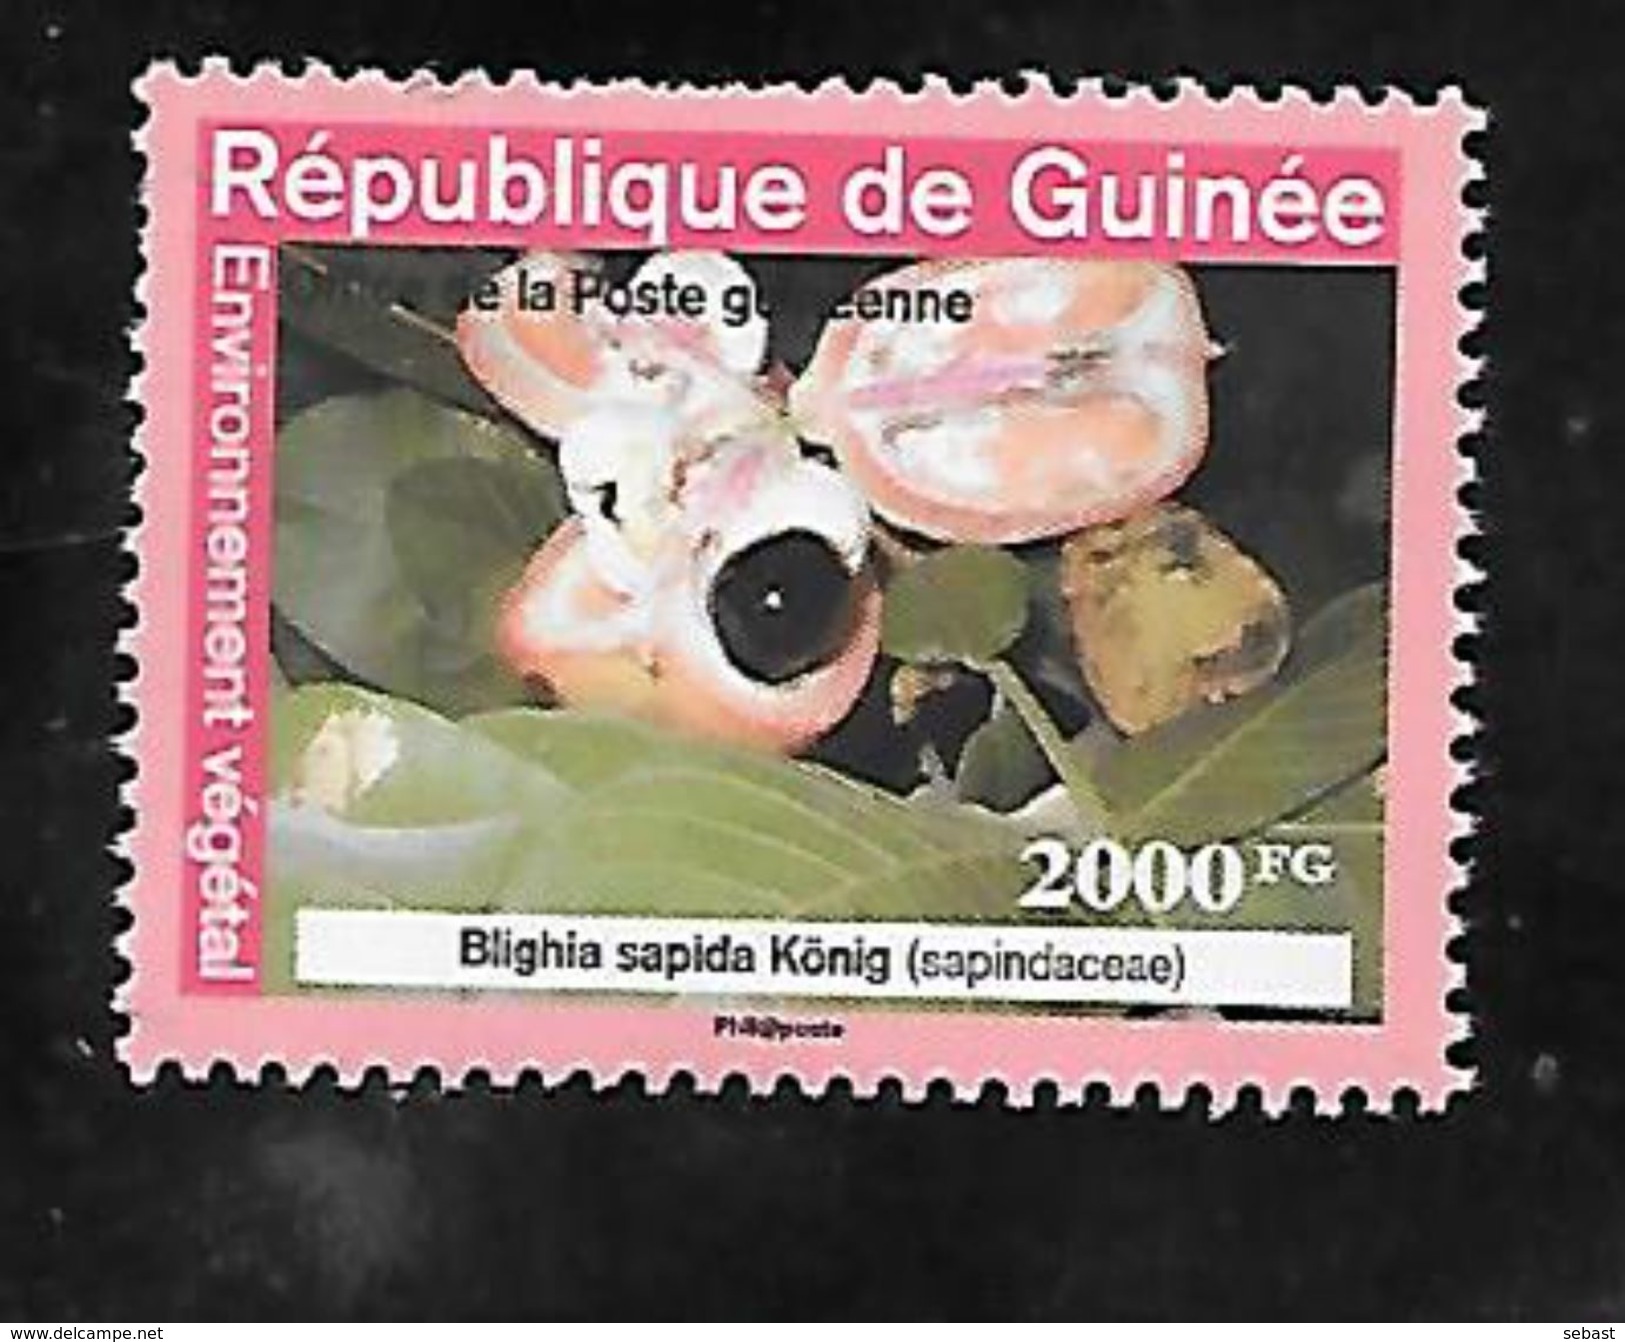 TIMBRE OBLITERE DE GUINEE DE 2009 N° MICHEL A 6354 - Guinea (1958-...)